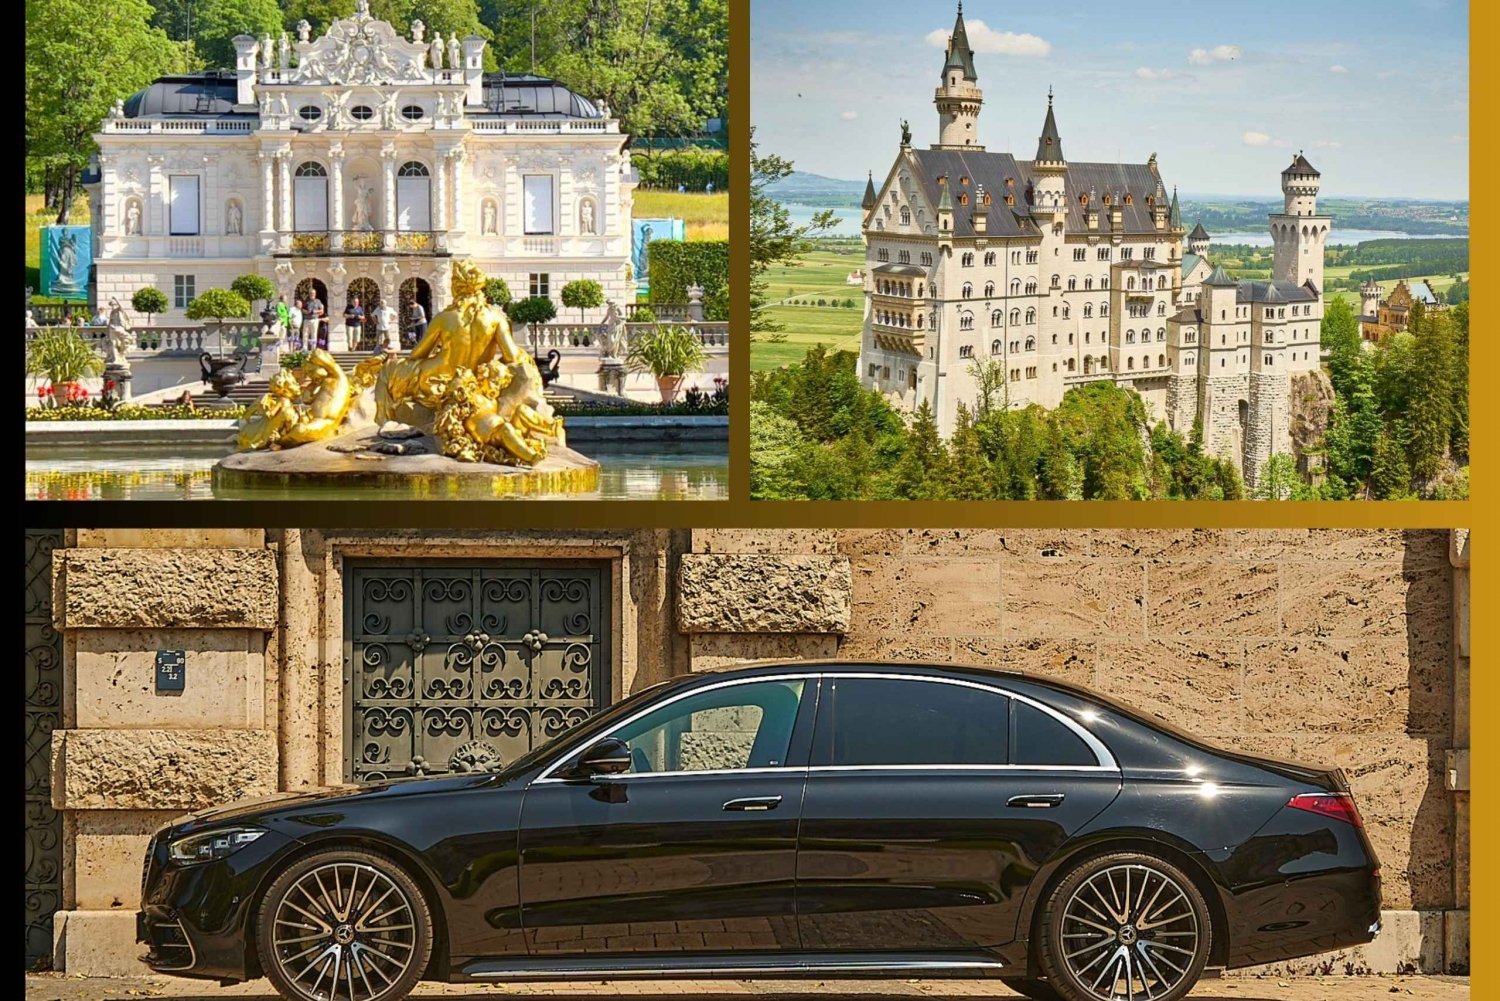 München: Schloss Neuschwanstein & Linderhof privat förare